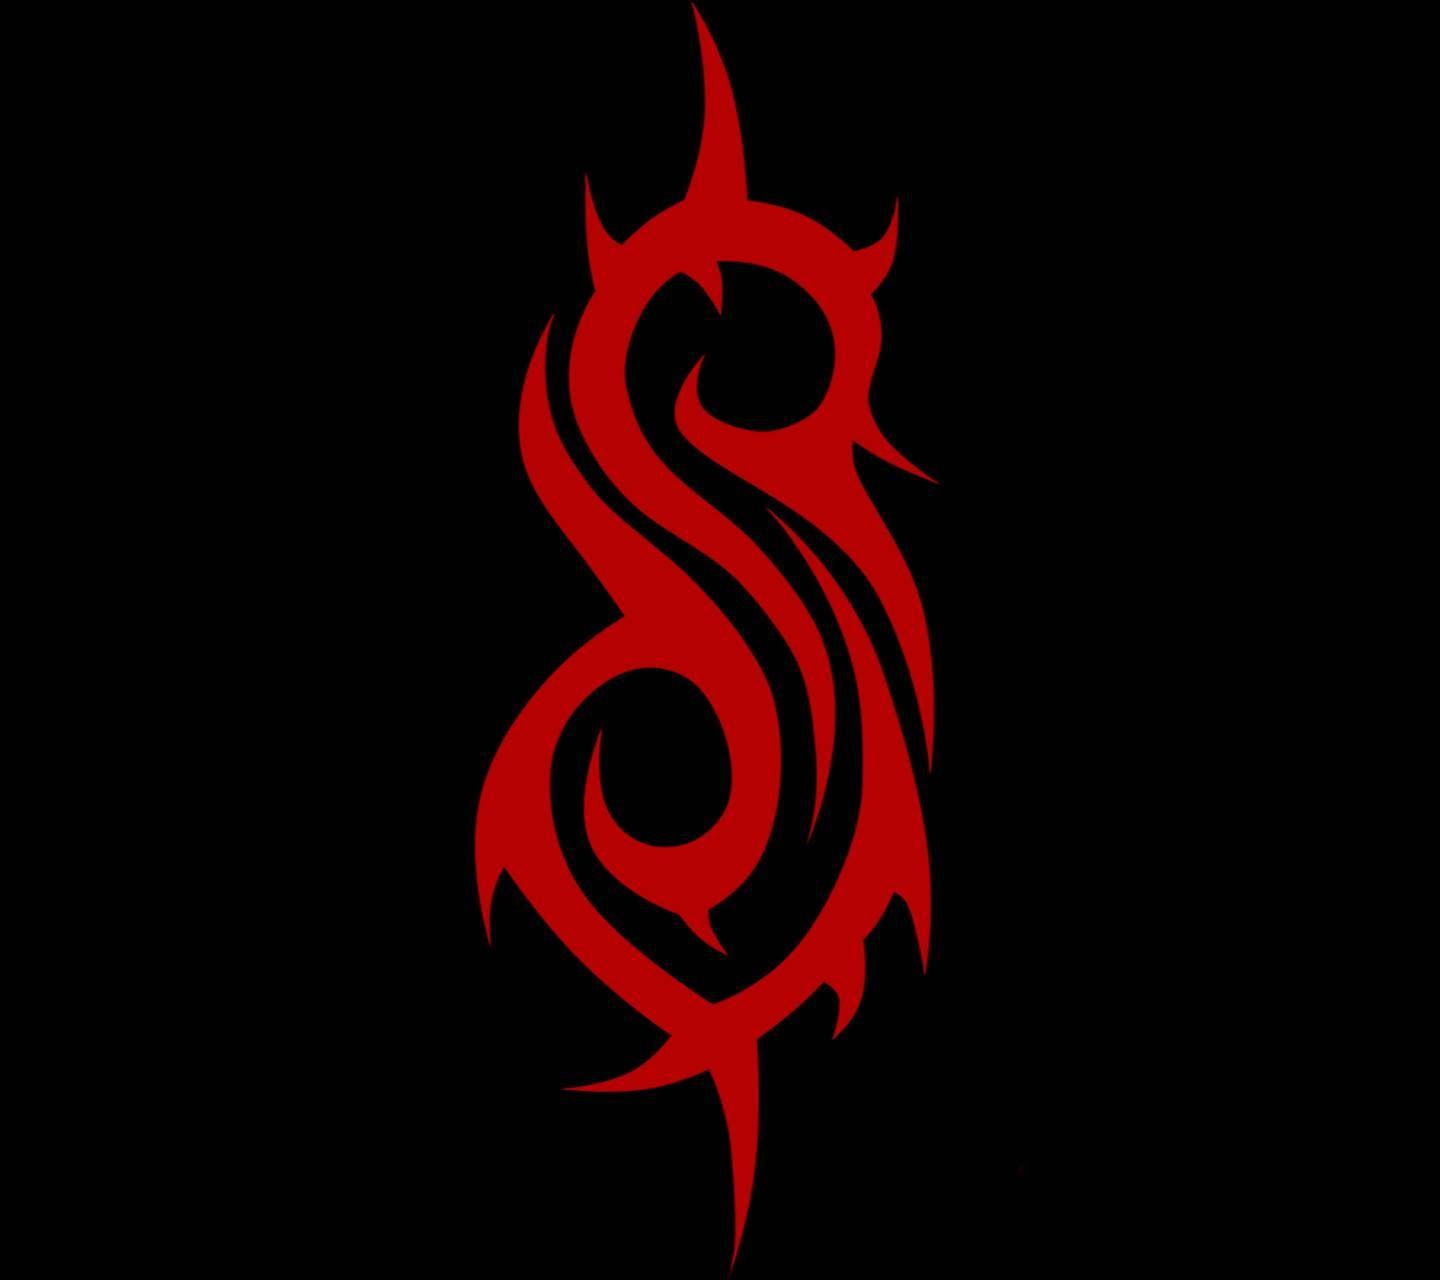 Slipknot Logo - Slipknot Logo Wallpaper by JRadz - 10 - Free on ZEDGE™